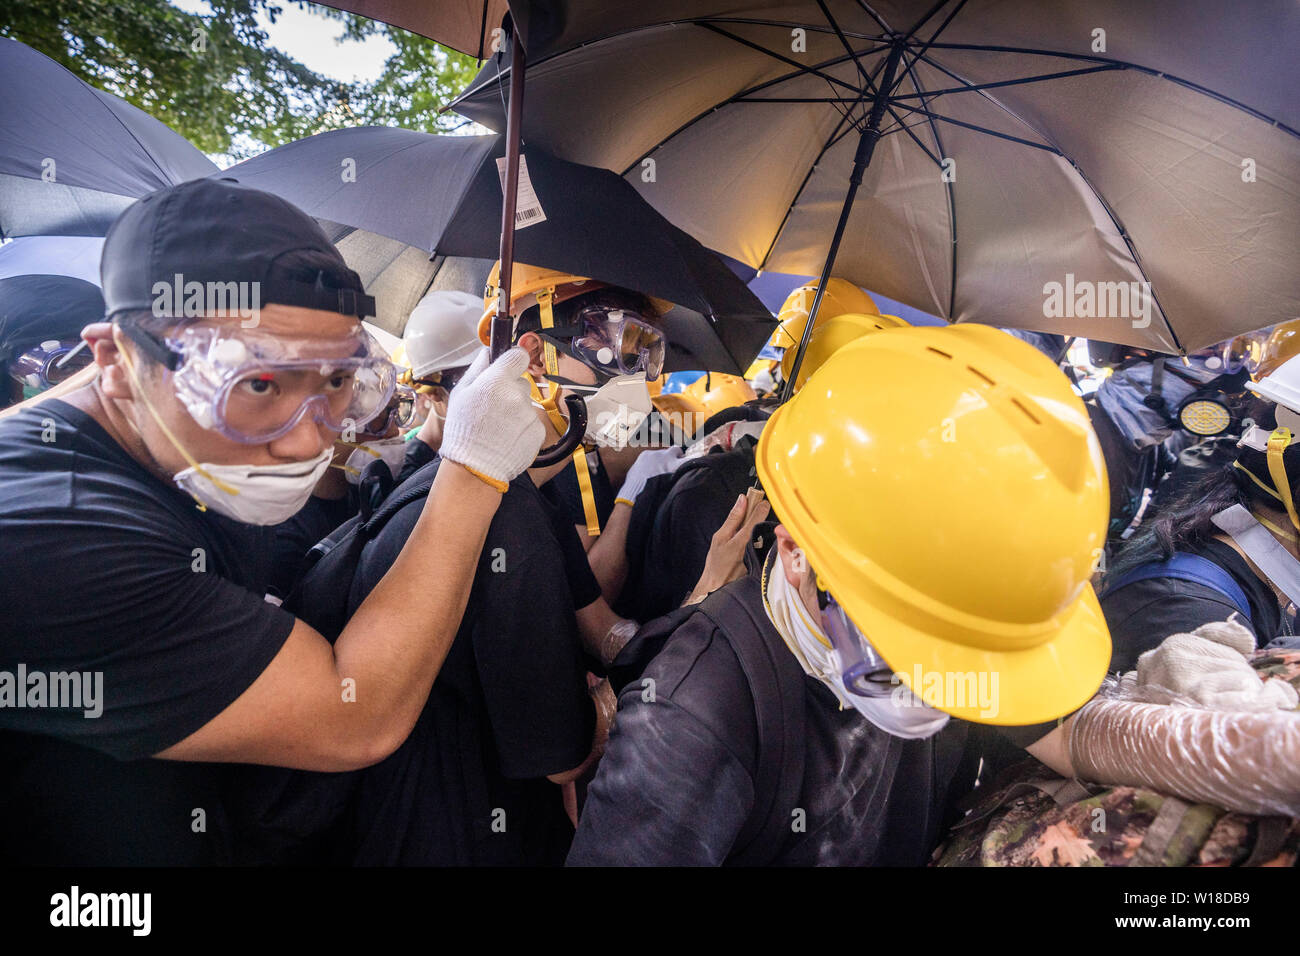 Des manifestants anti gouvernement utiliser parasols comme boucliers, ils ont également porter des engins tels demandez des masques à gaz, casques et lunettes de sécurité pour eux-mêmes la défense de jet de poivre de la police et des gaz lacrymogènes alors qu'ils tentent de prendre d'assaut le bâtiment du Conseil législatif.Des centaines de manifestants se rassemblent à l'extérieur du bâtiment du Conseil législatif et tentent de forcer le passage et occuper le parlement de Hong Kong le 1 juillet que le territoire a marqué l'anniversaire de sa 22e anniversaire rétrocession à la Chine. Banque D'Images